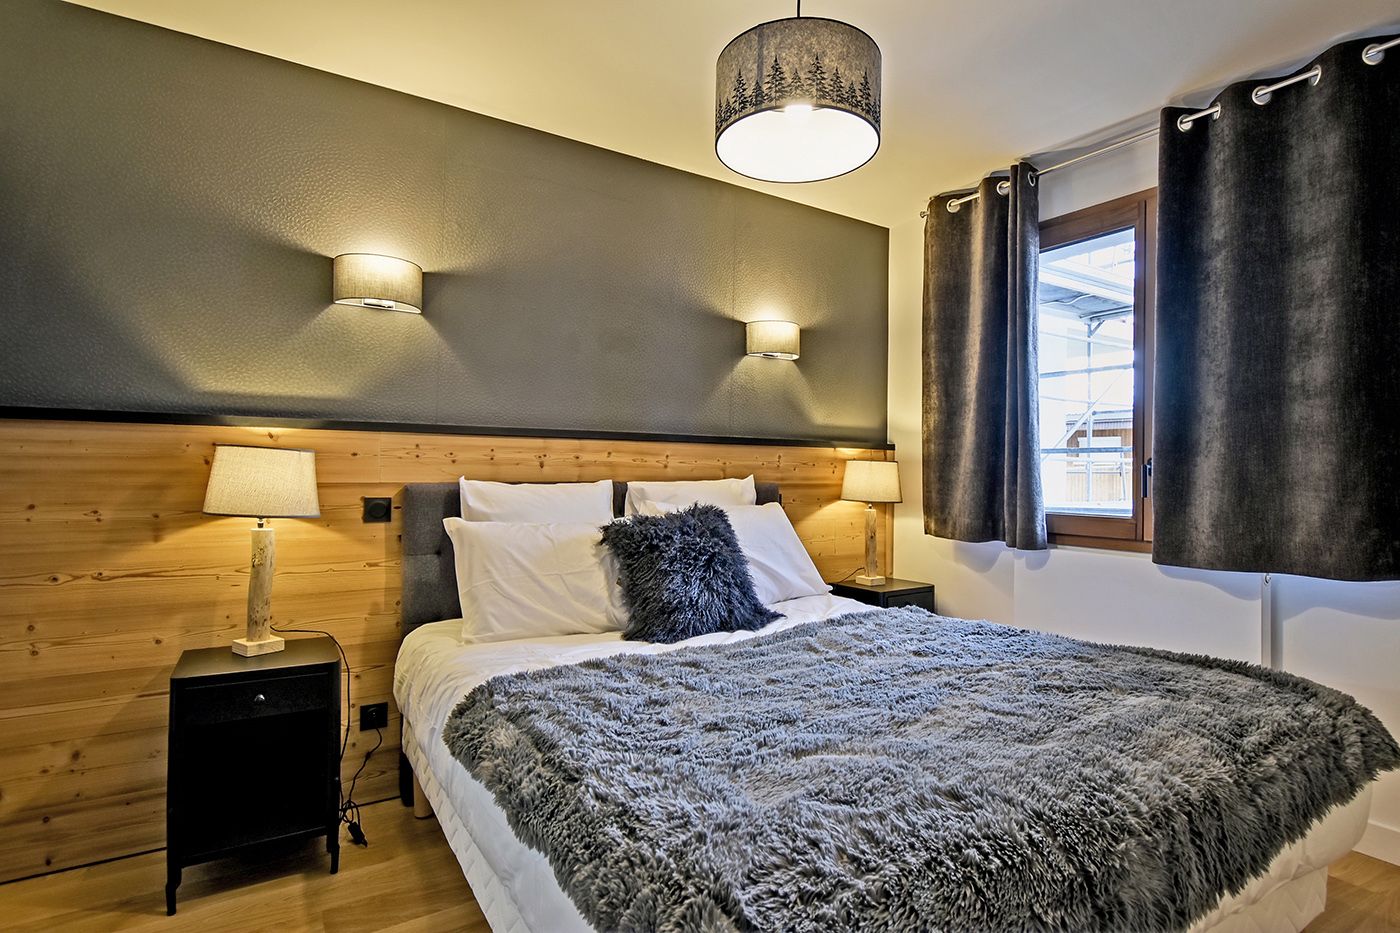 Appartement 3 chambres à vendre à Alpe d’Huez Grand Domaine, Alpes françaises